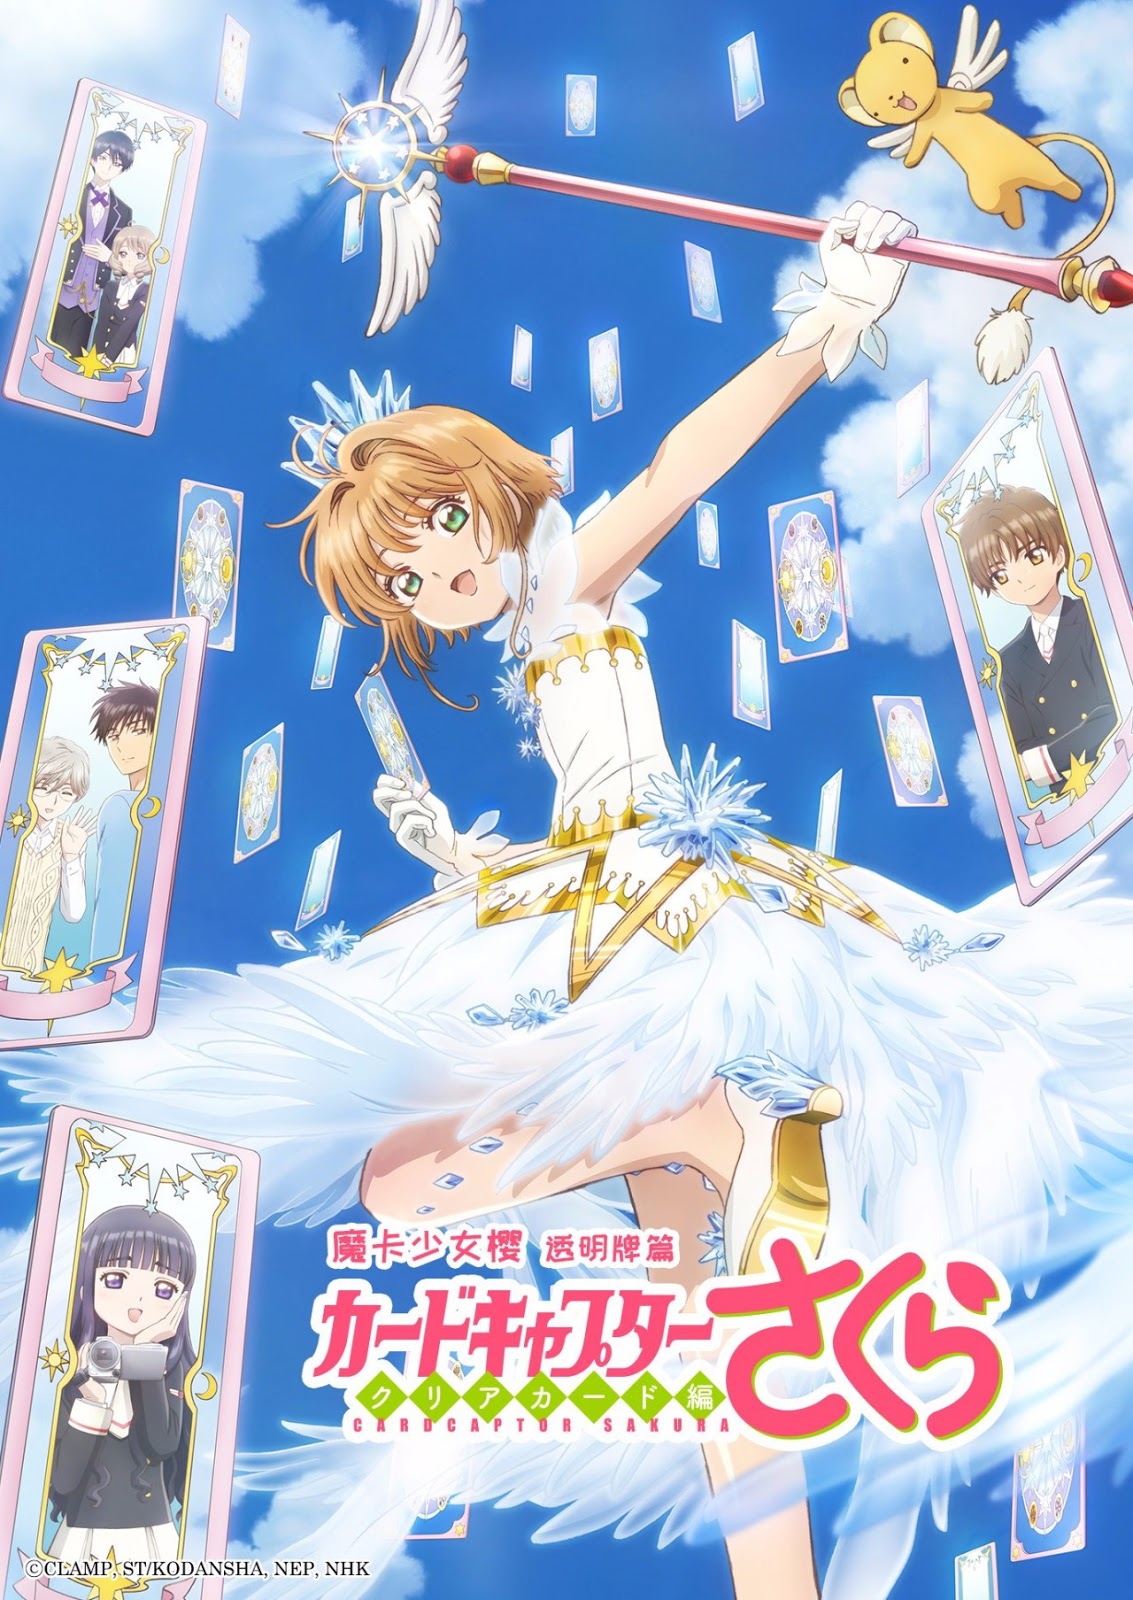 Poster Phim Sakura – Thủ Lĩnh Thẻ Bài 2: Thẻ Bài Trong Suốt (Cardcaptor Sakura: Clear Card-hen)